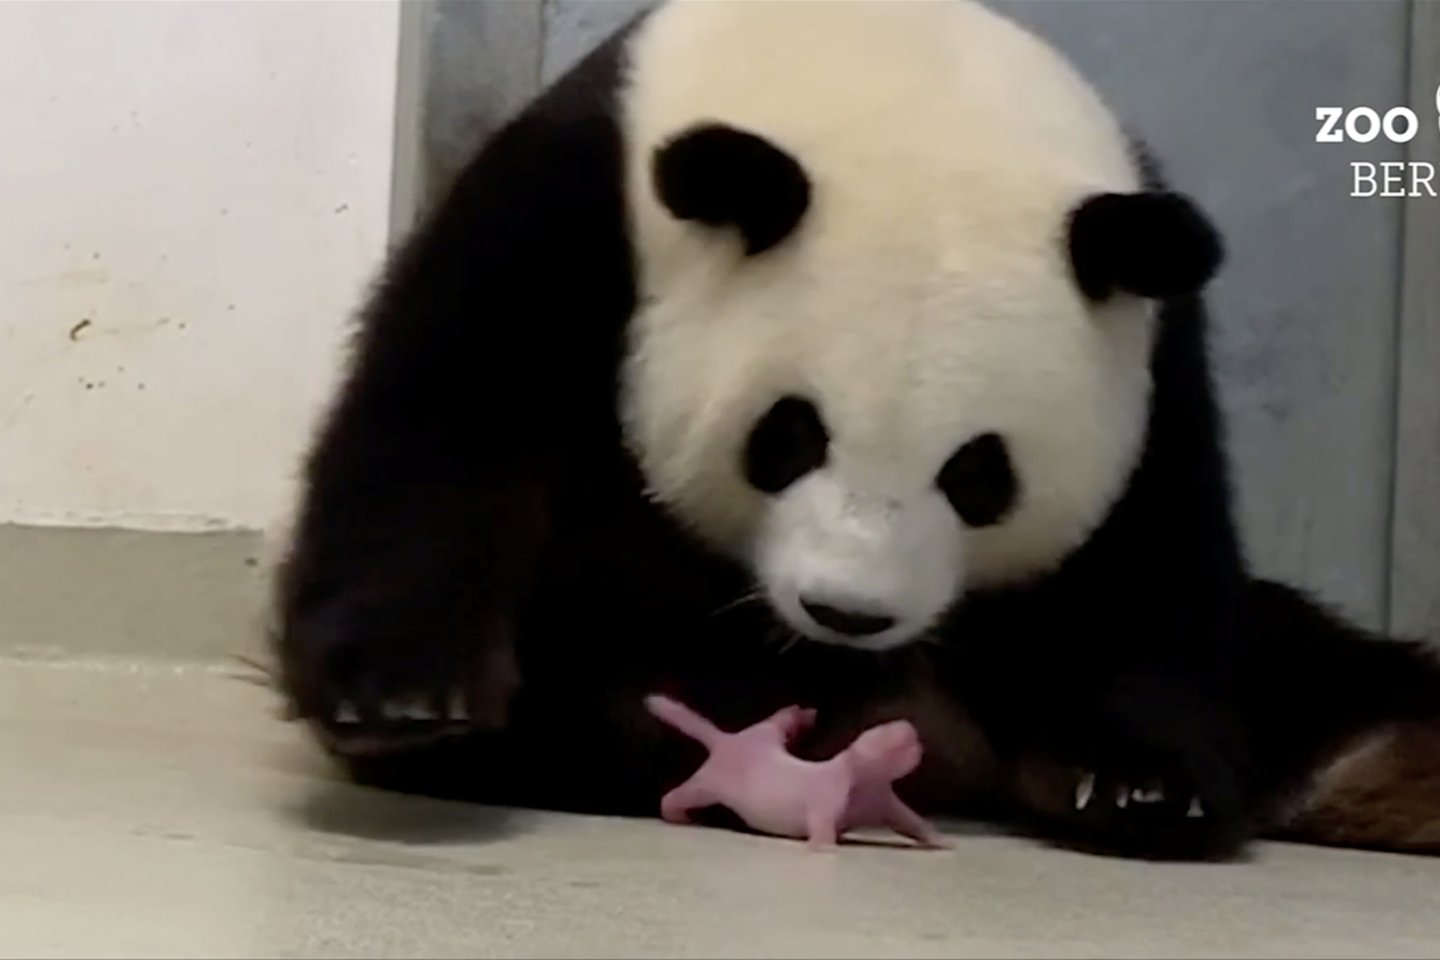  Vos gimę pandų mažyliai būna rausvi ir turi ilgas uodegas.